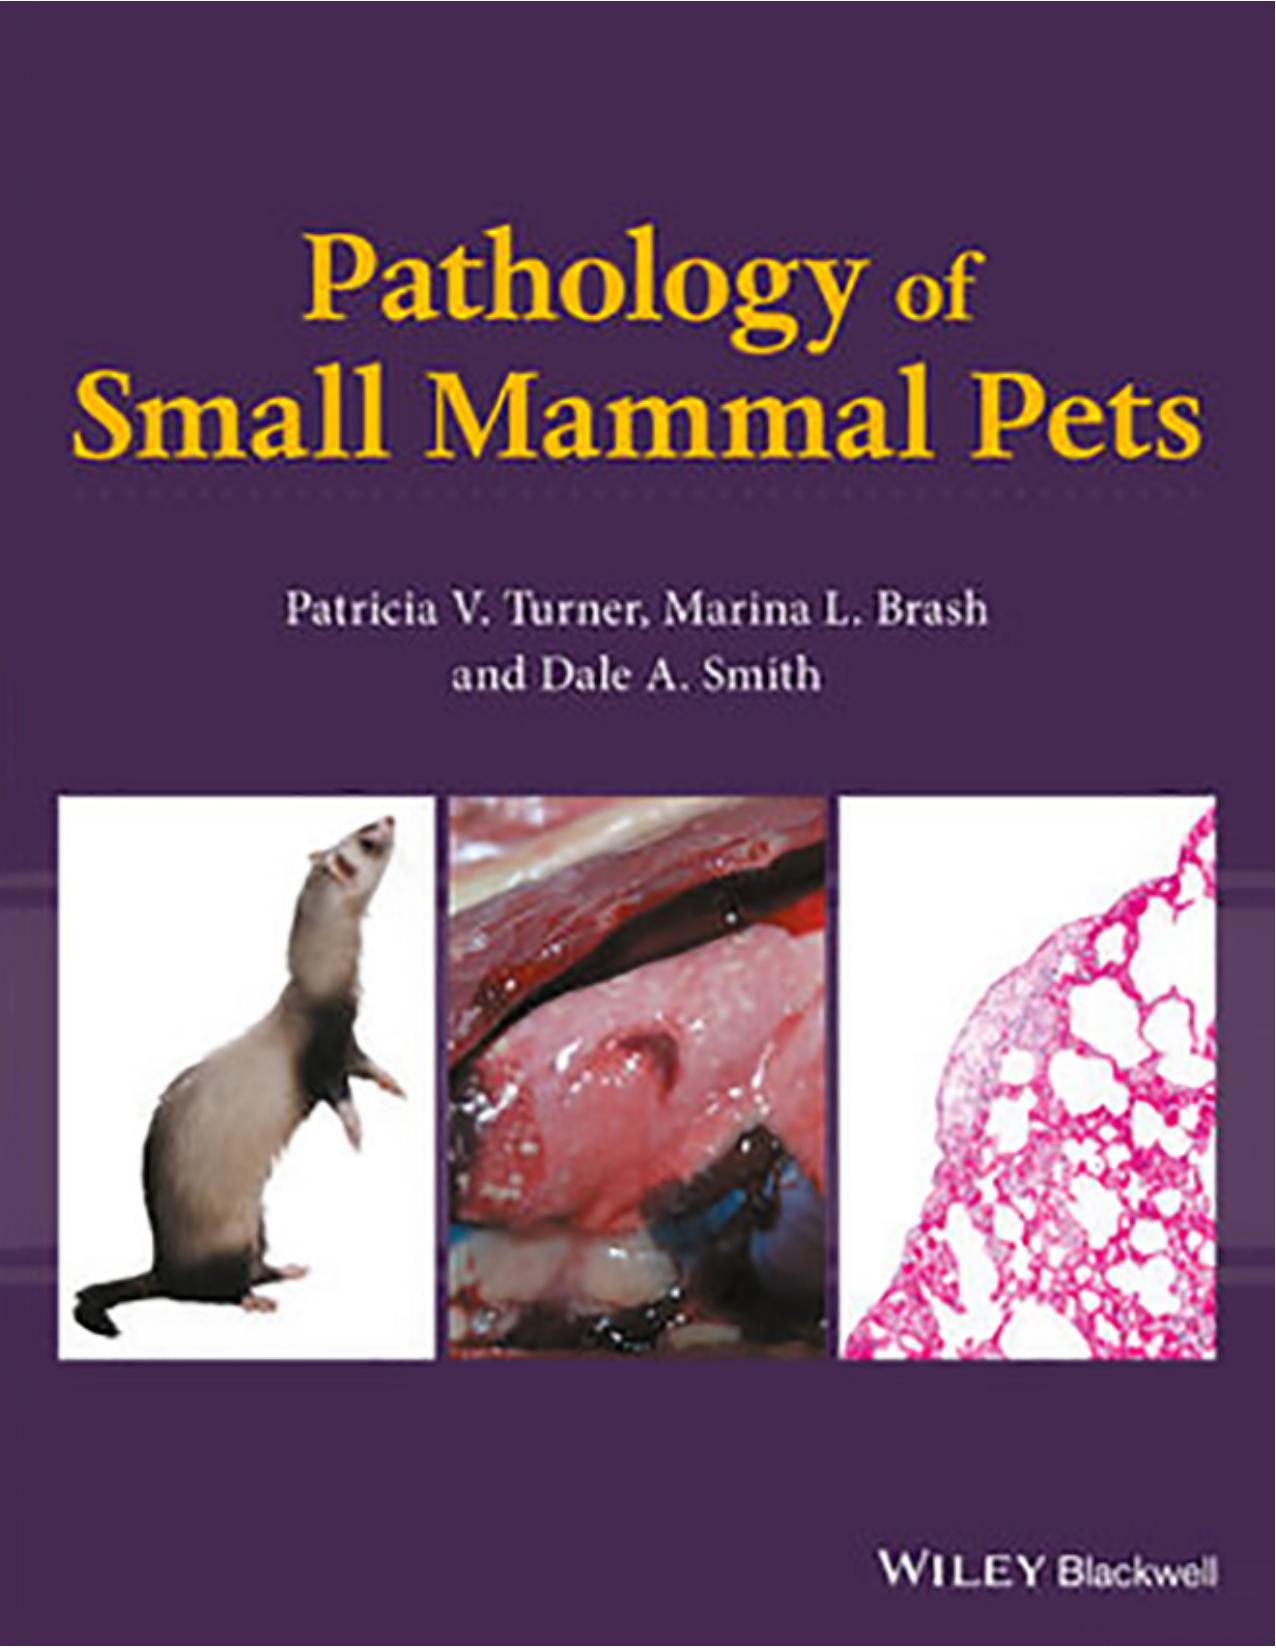 Pathology of Small Mammal Pets 2018